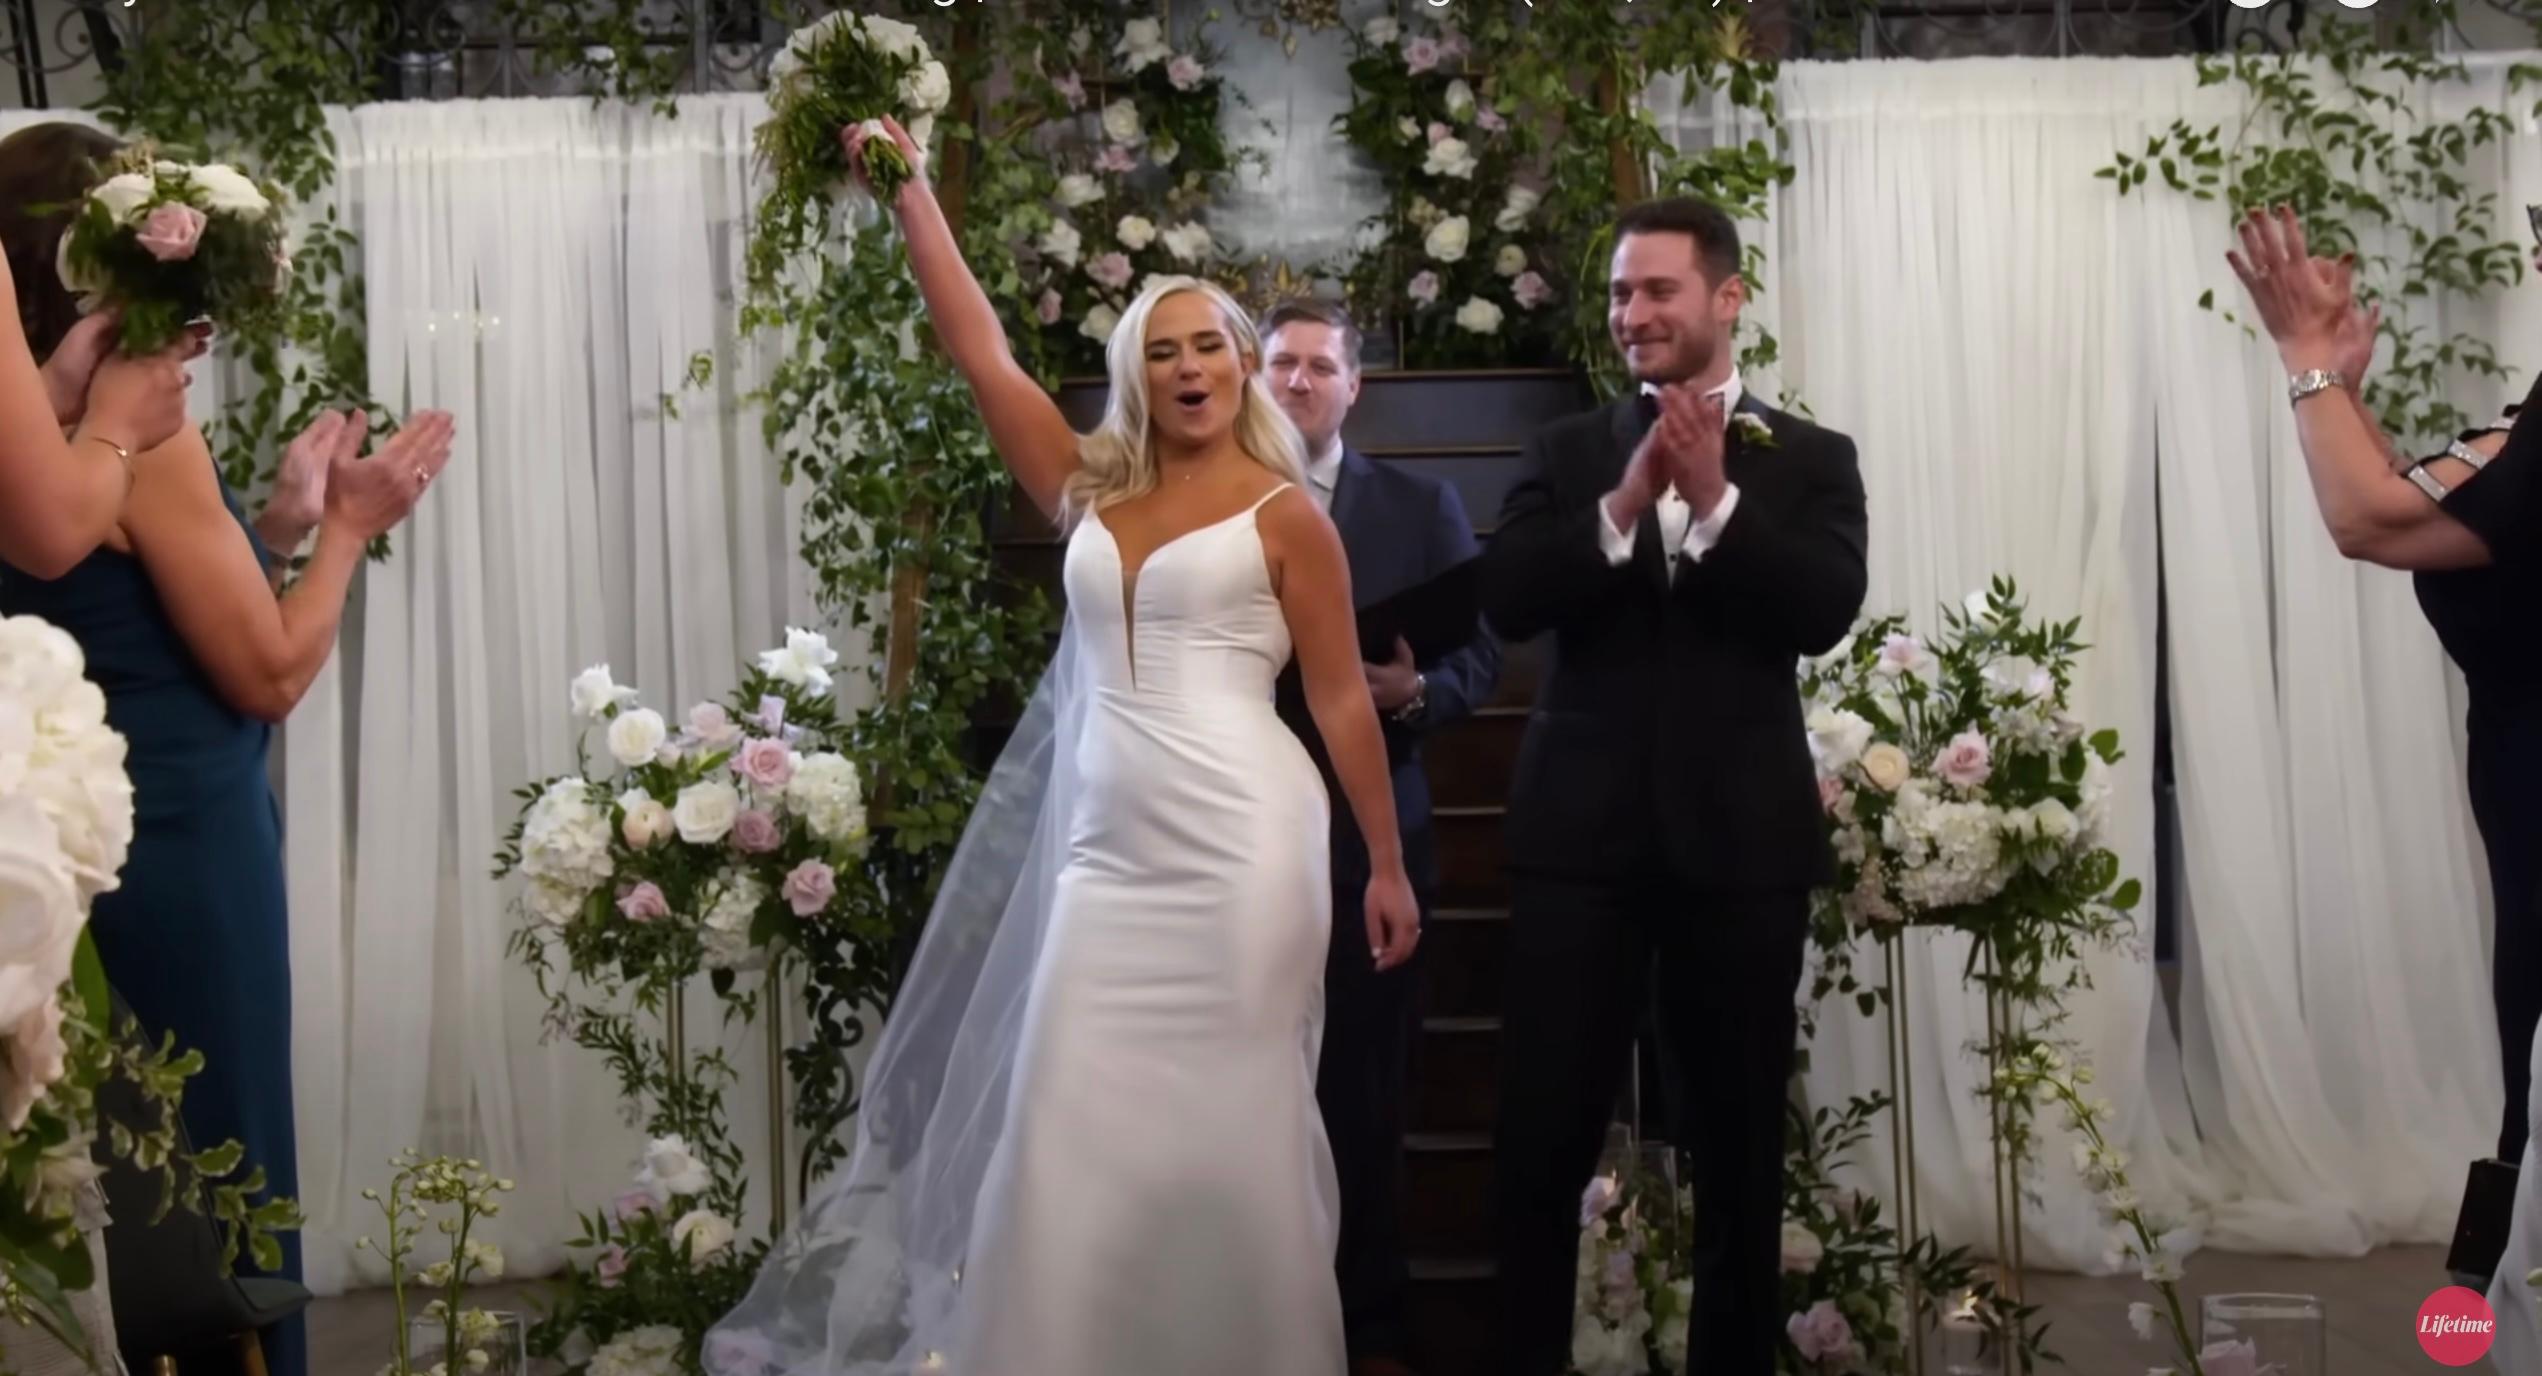 'MAFS' stars Emily and Brennan on their wedding day